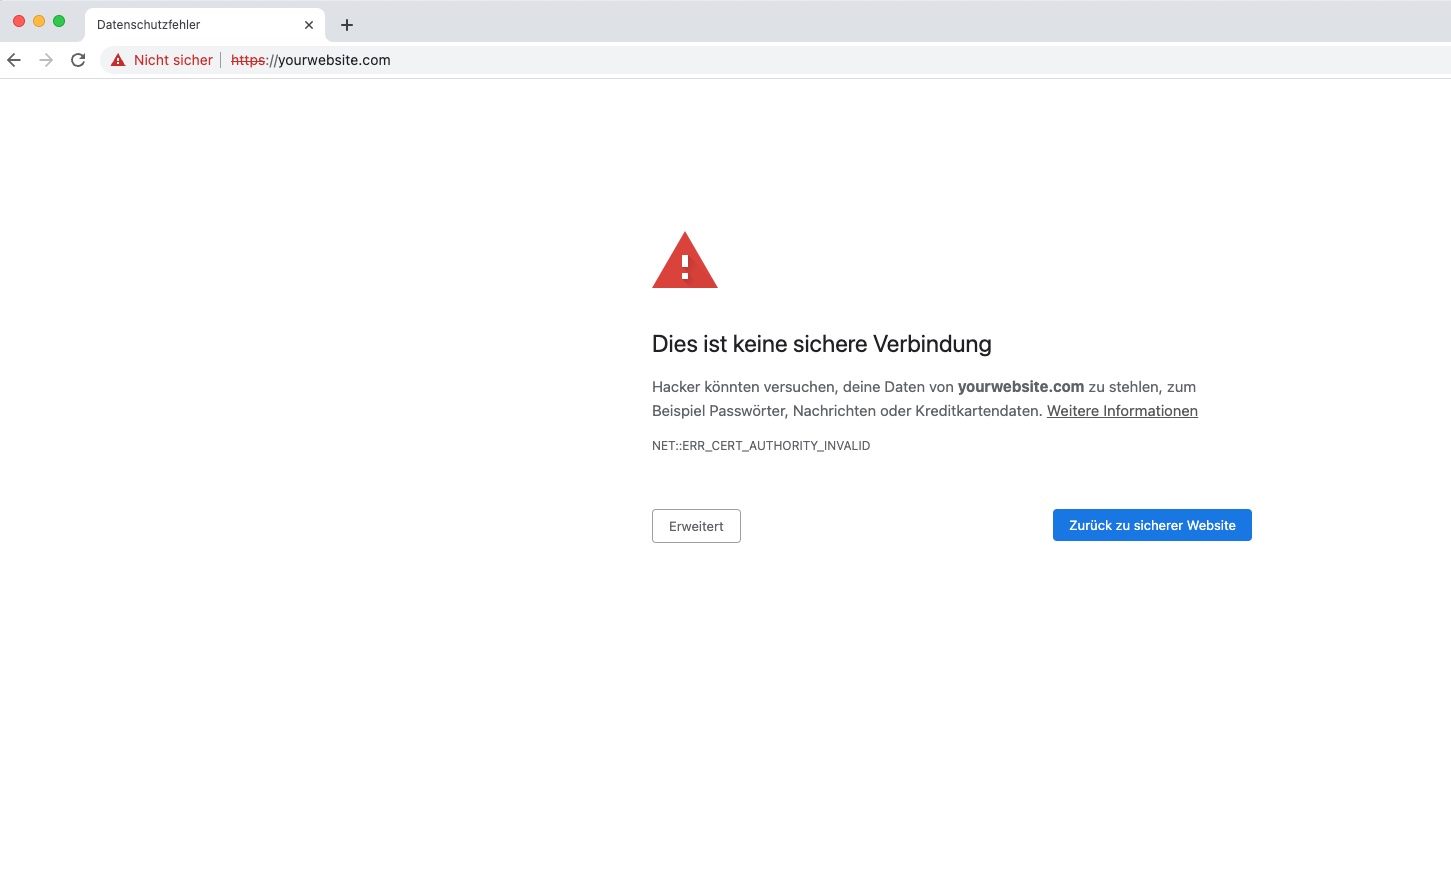 Stellen Sie sicher, dass Ihr Antivirus-Programm nicht den Zugriff auf Chrome blockiert.
Deaktivieren Sie vorübergehend Ihr Antivirus-Programm und prüfen Sie, ob der Fehler weiterhin auftritt.